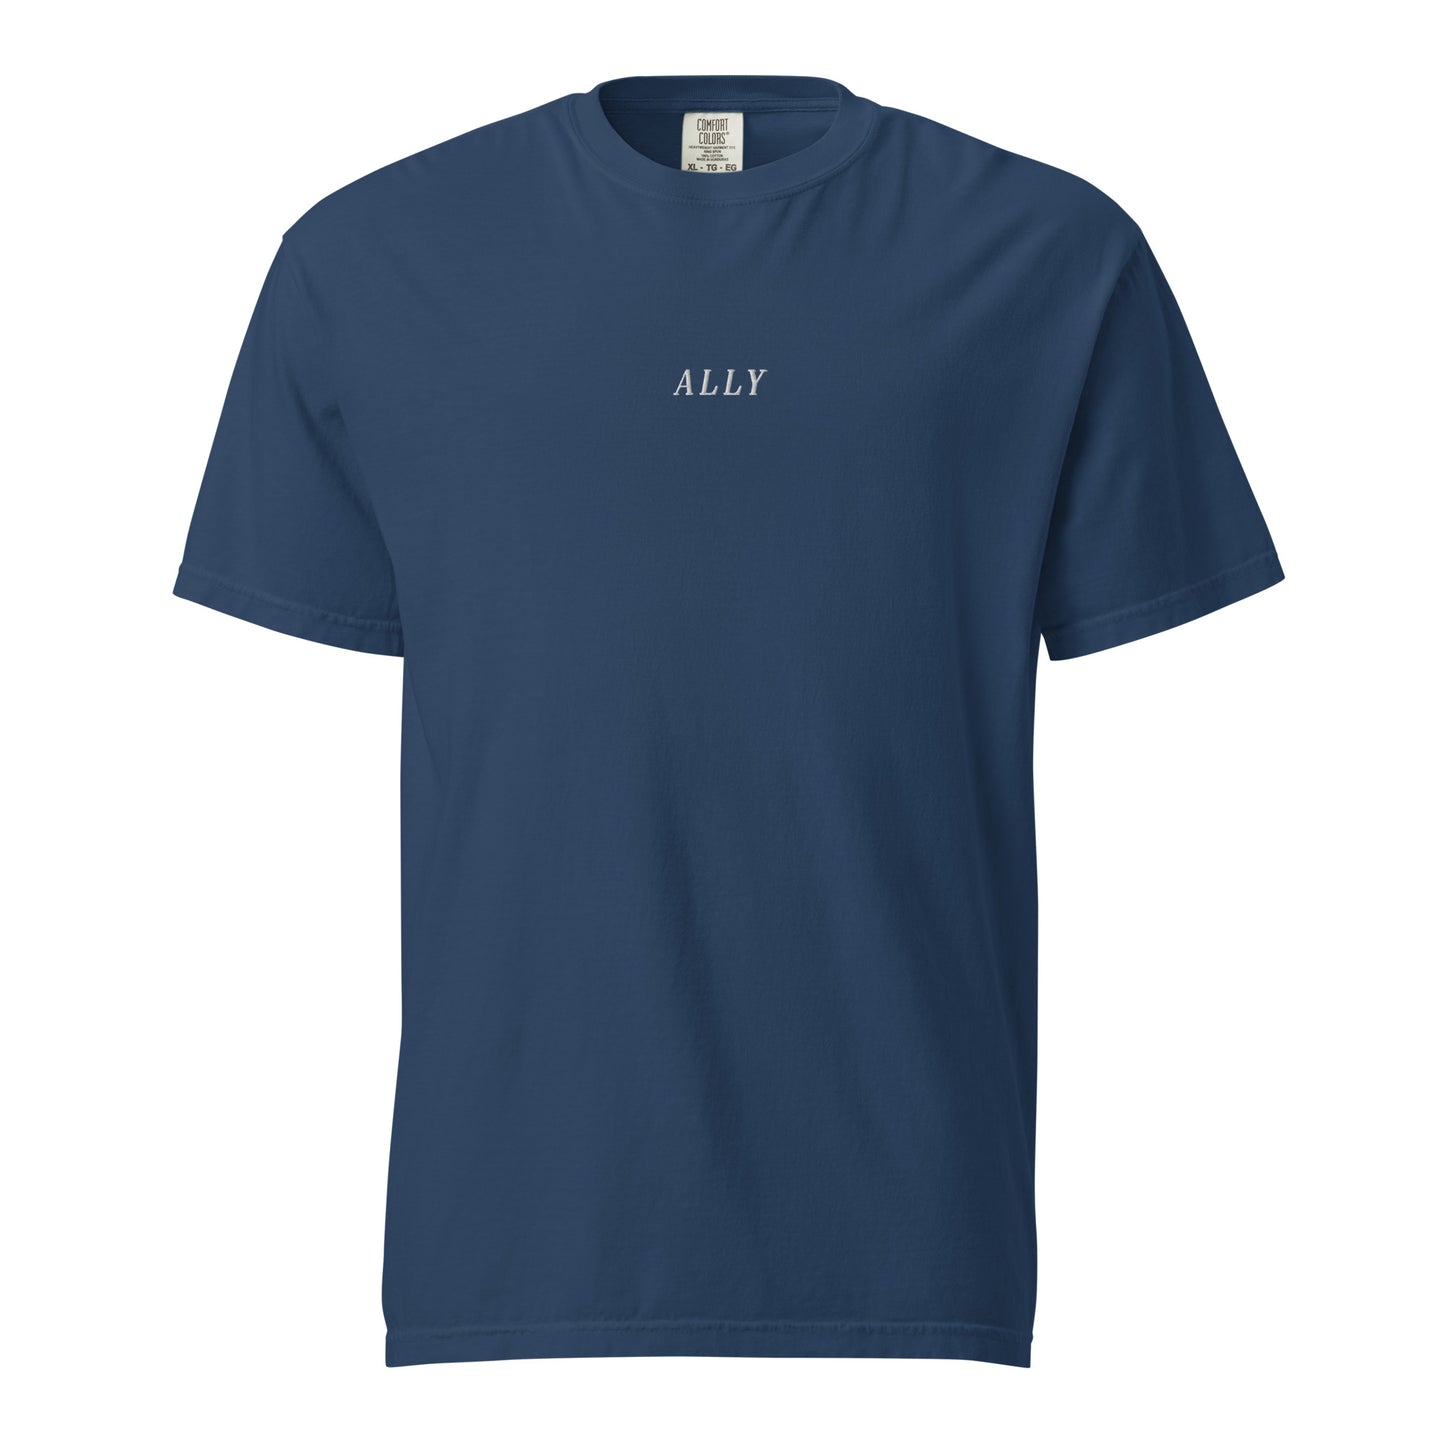 the Ally t-shirt - hvit brodering